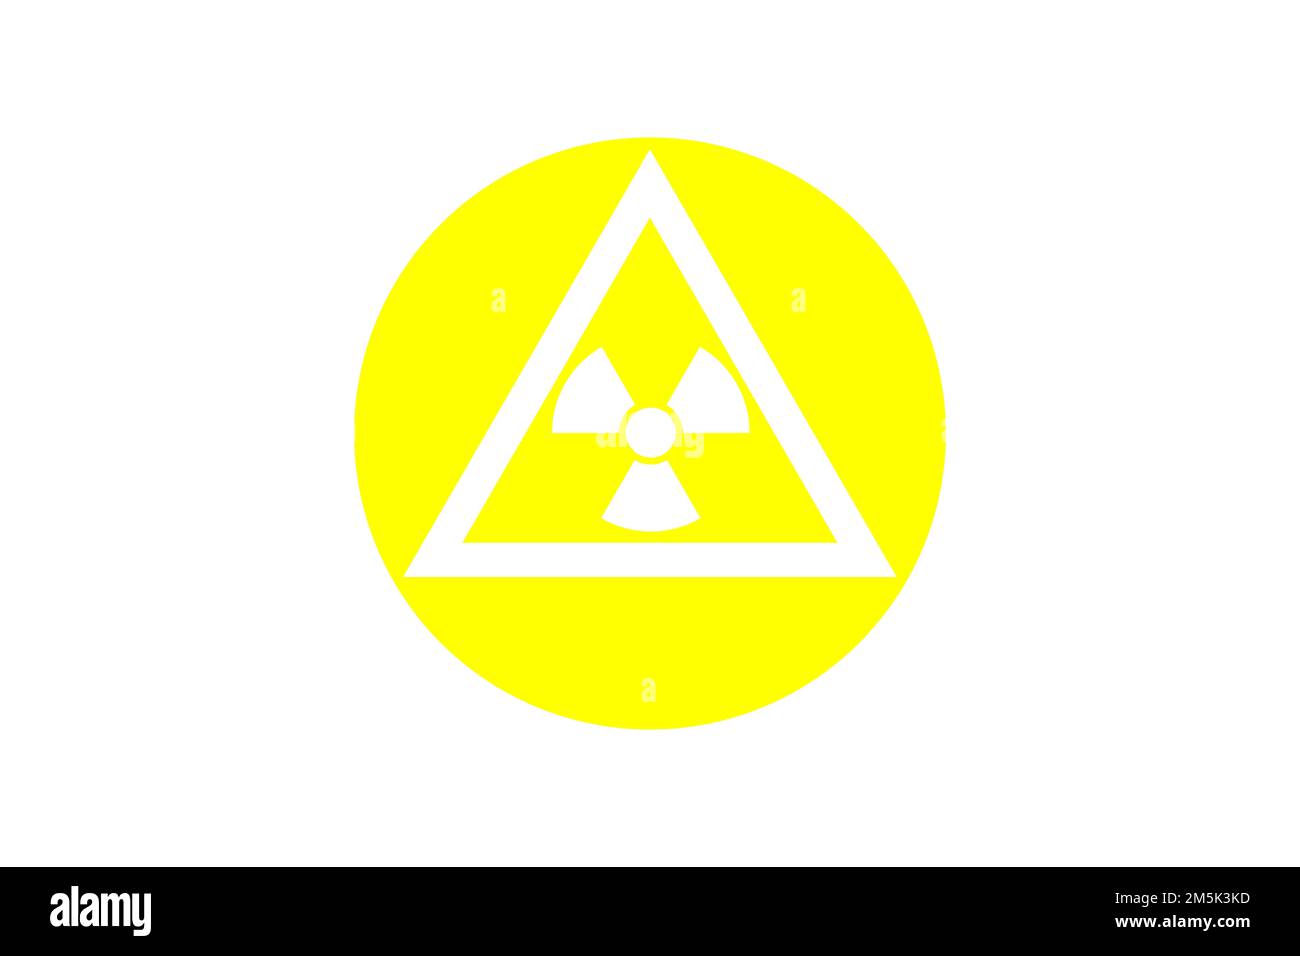 Strahlungssymbol für Kernmaterial, Gefahrensymbol für radioaktives Material oder Bereiche. Radioaktivitätssymbol in einem Kreis mit gut sichtbarer Farbe Stockfoto